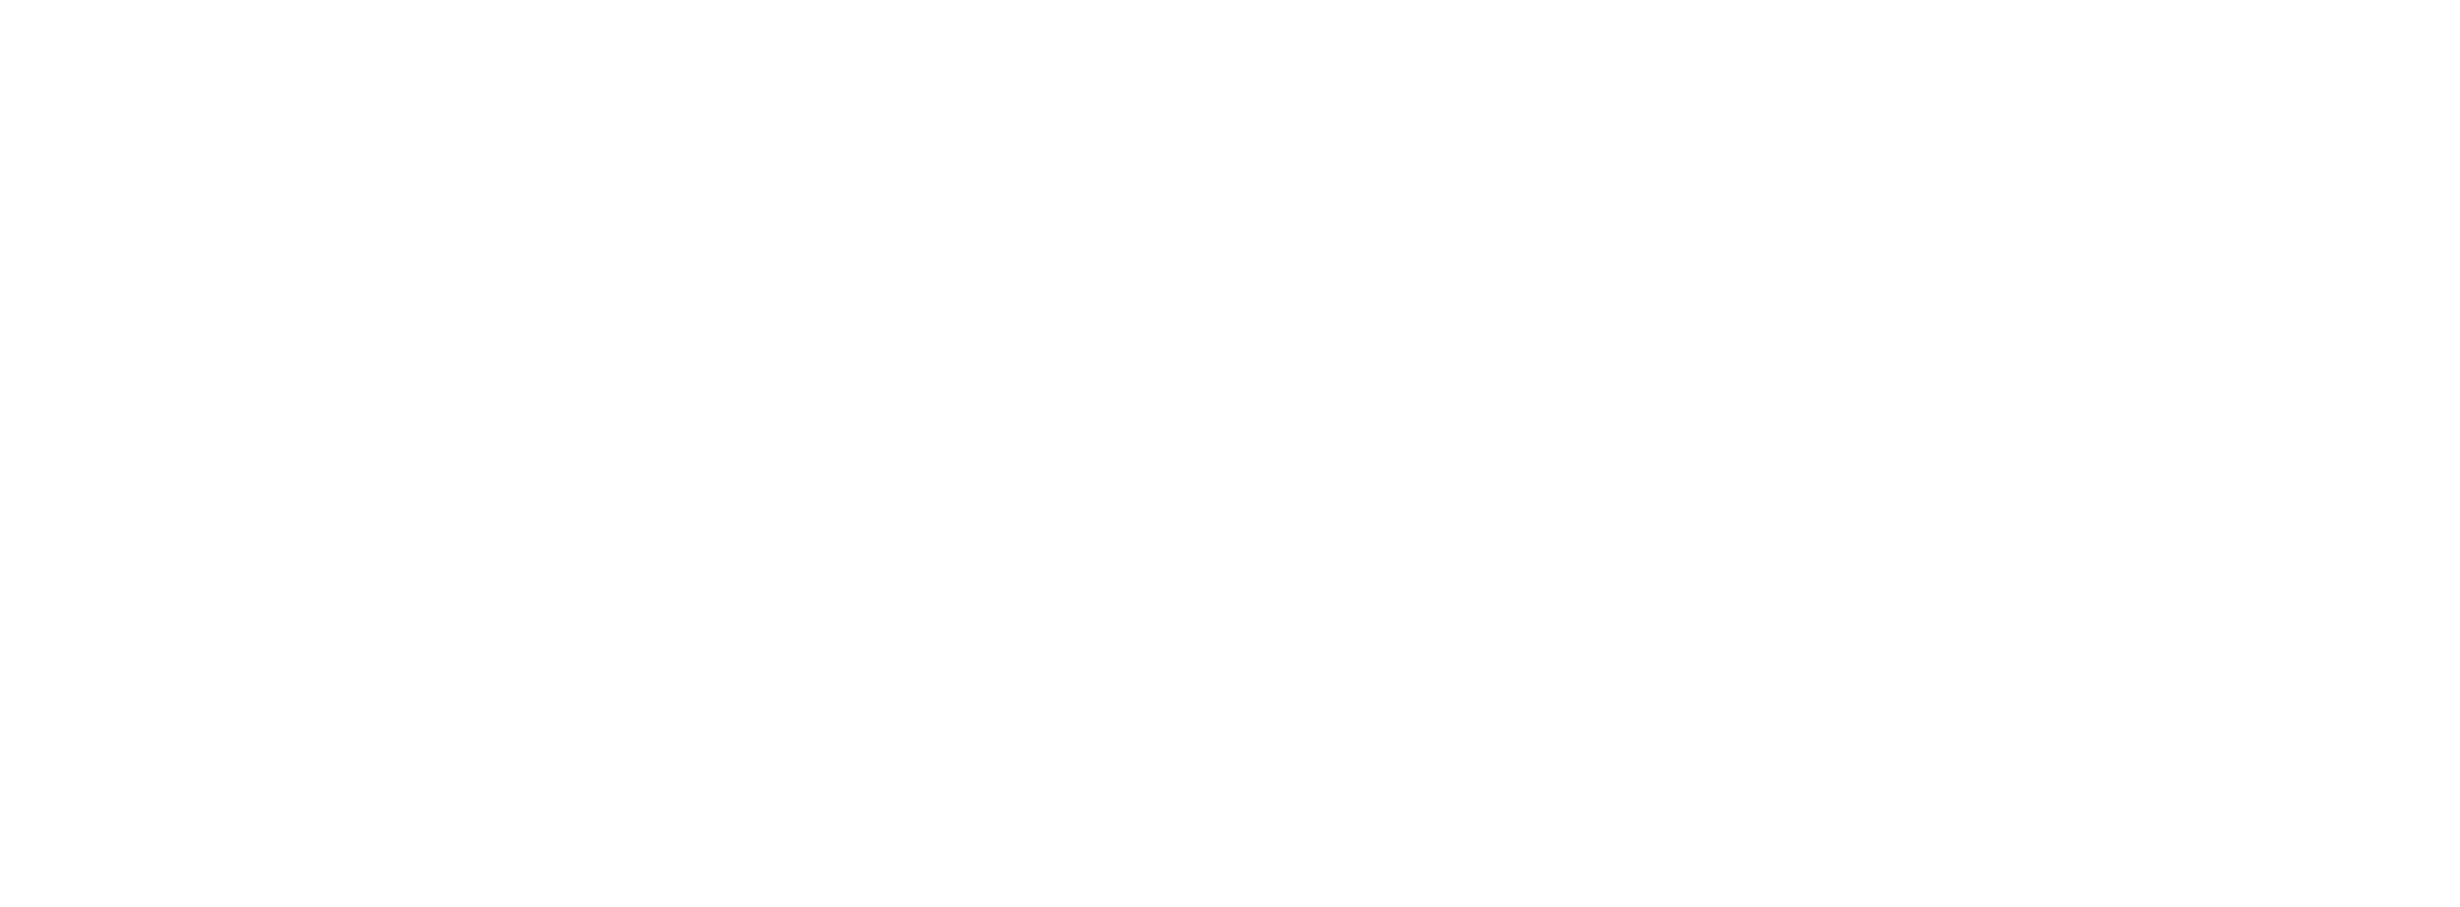 中医药生态大会暨中医药产业博览会